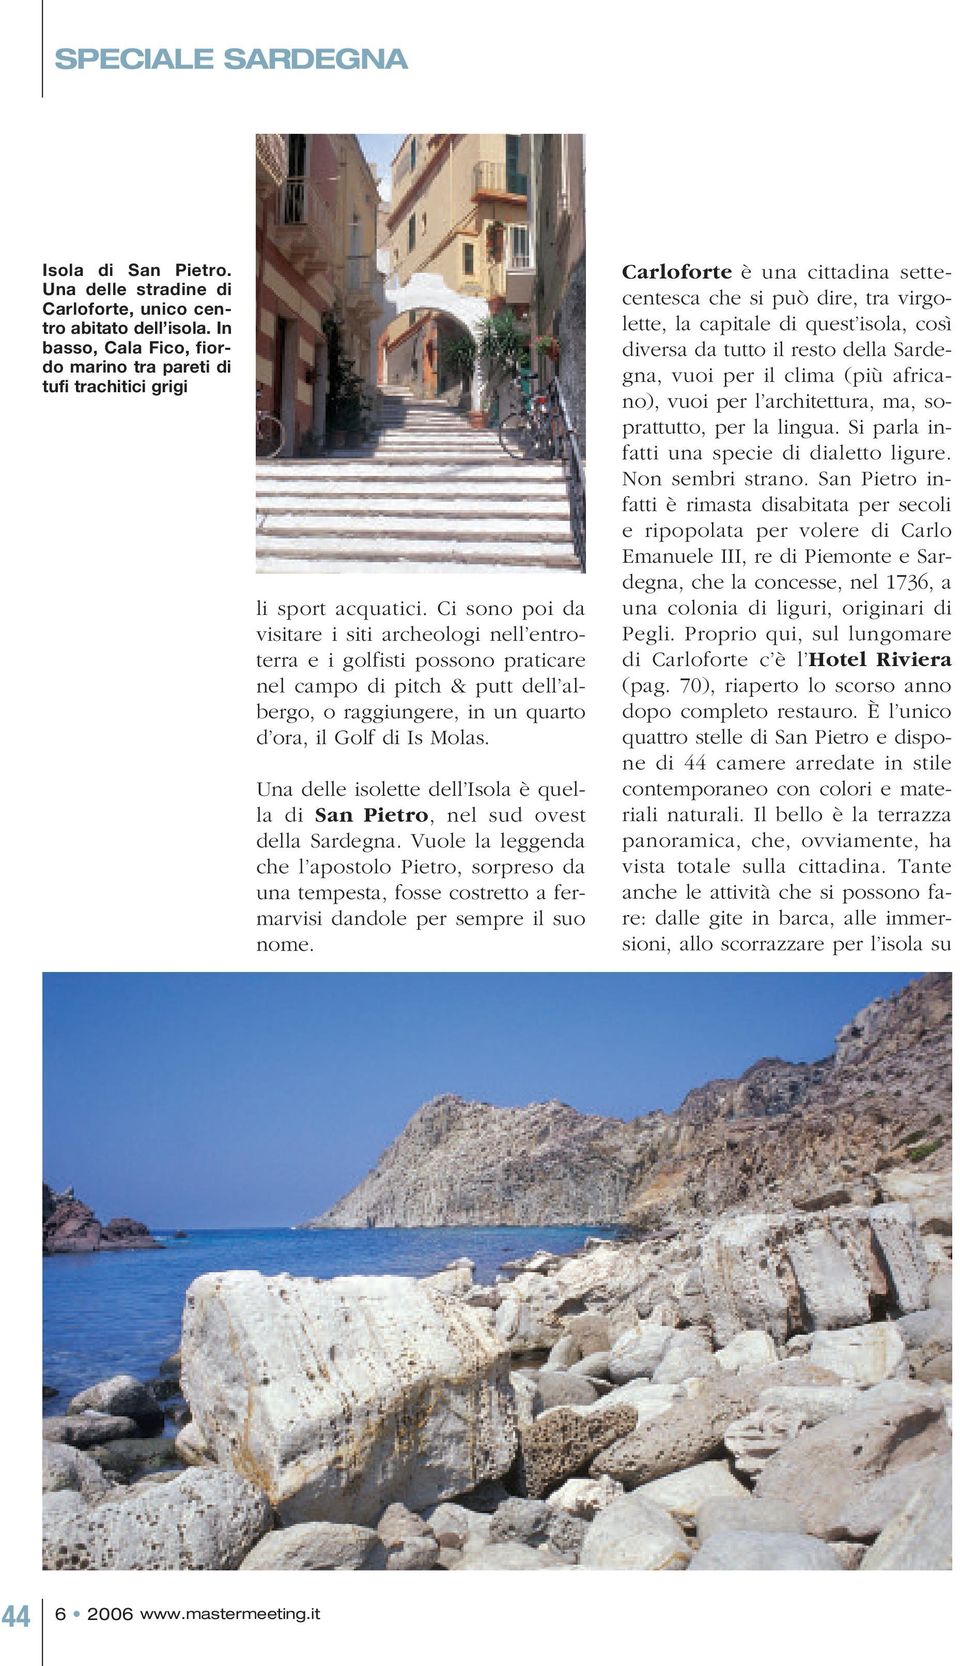 Una delle isolette dell Isola è quella di San Pietro, nel sud ovest della Sardegna.